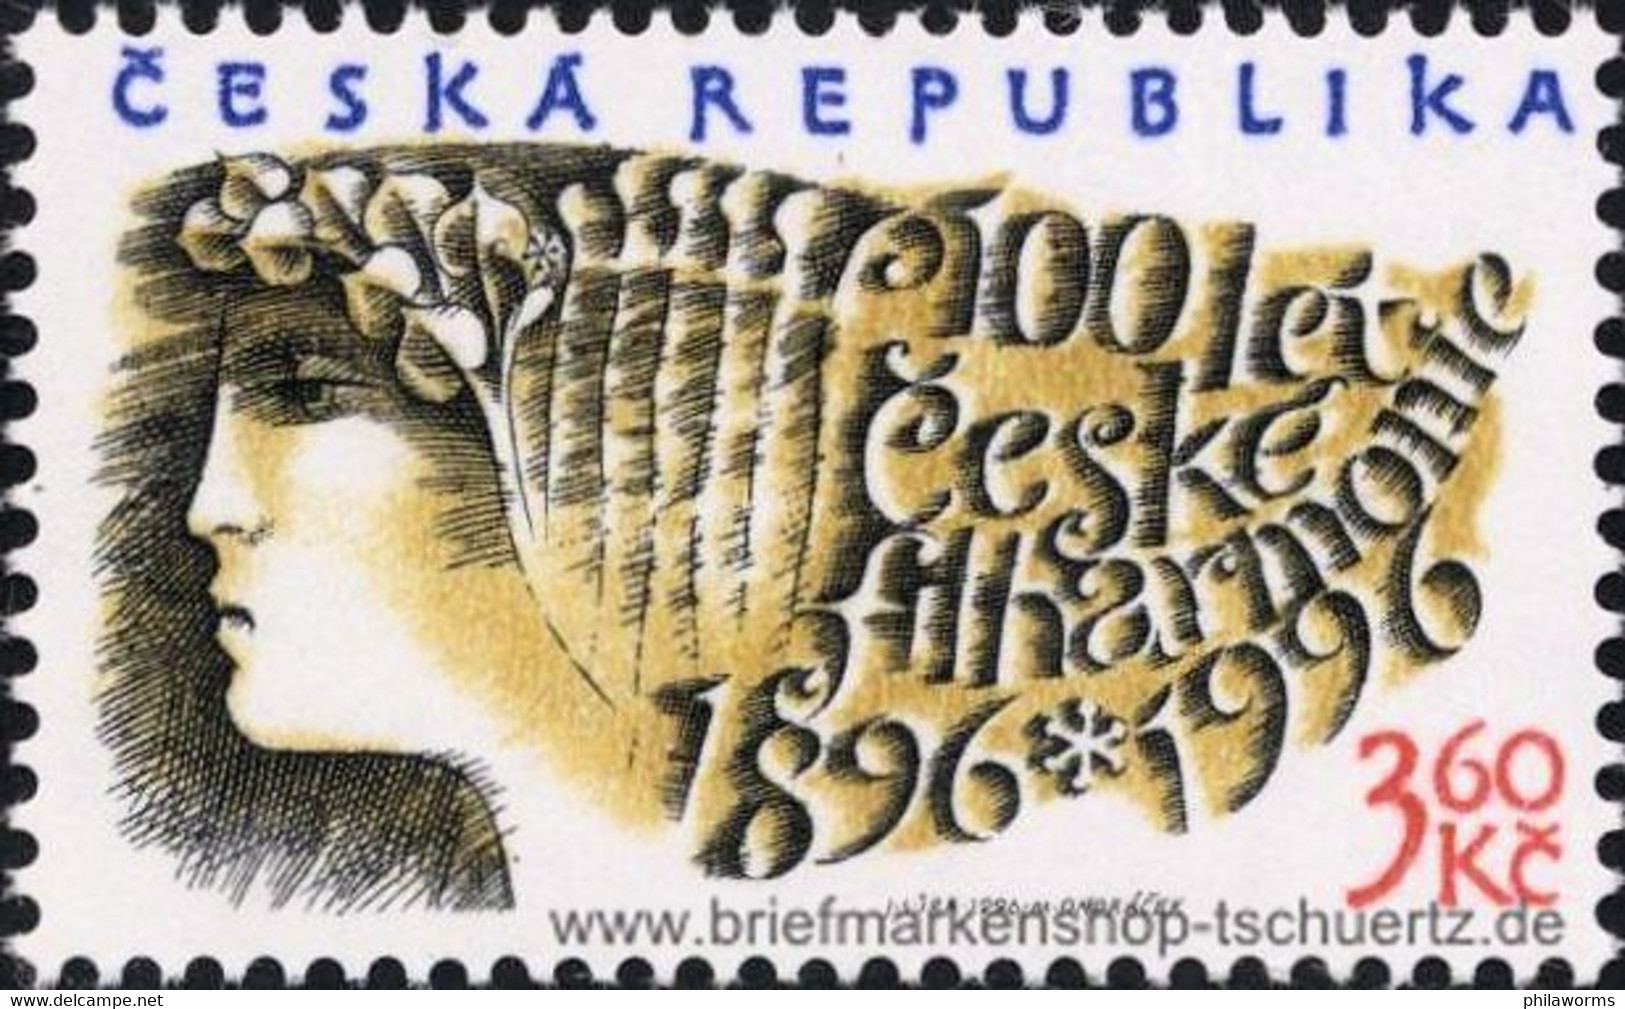 Tschechien 1996, Mi. 100 ** - Nuovi